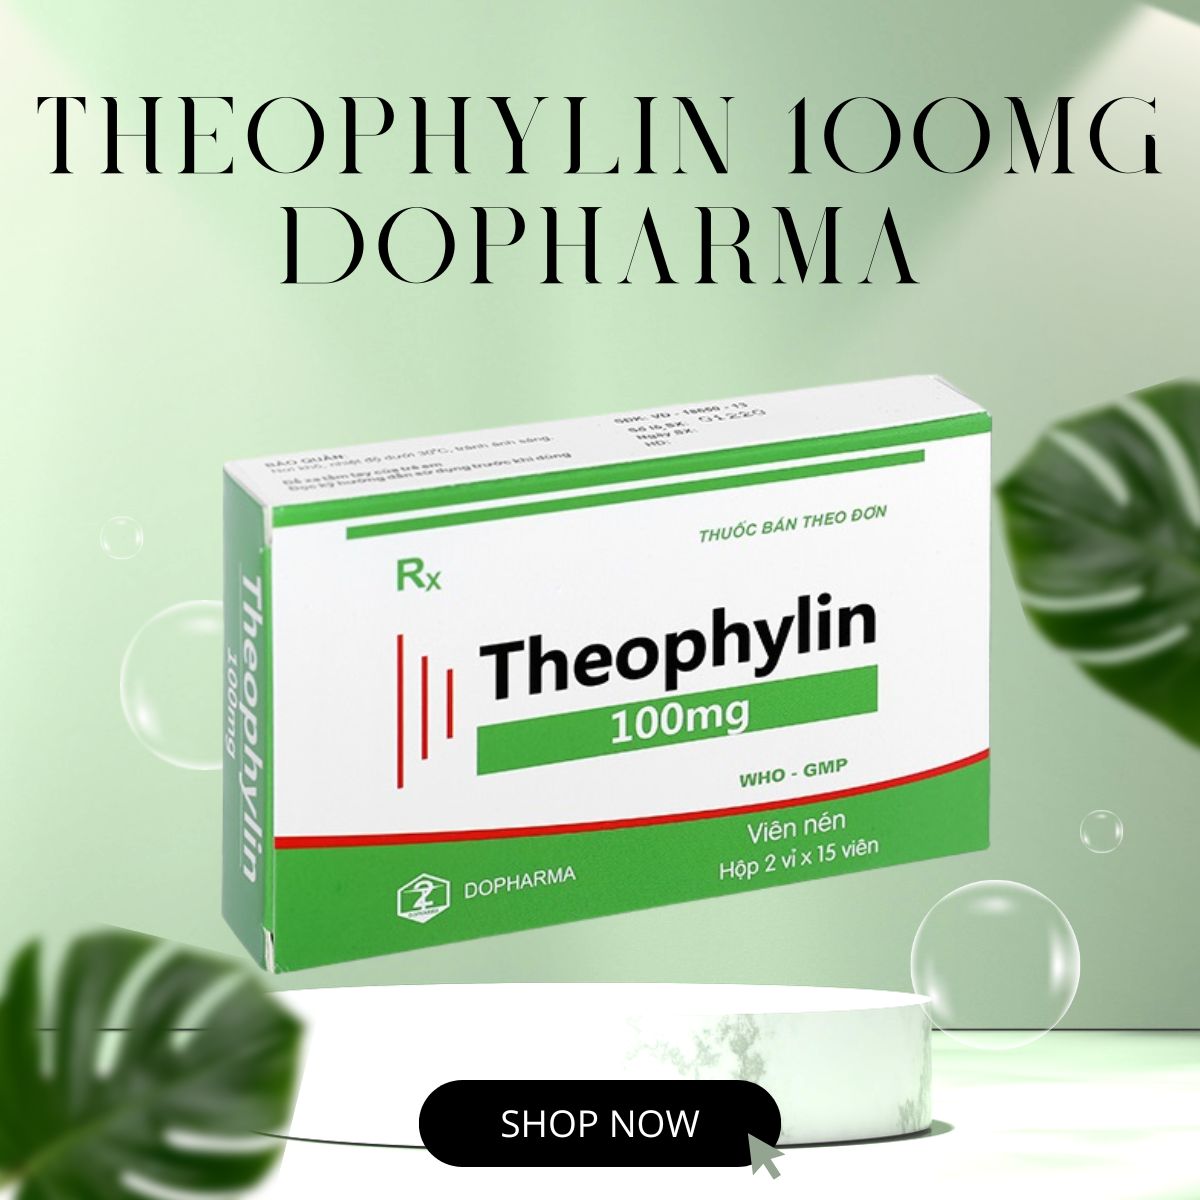 Theophylin 100mg Dopharma có công dụng gì?